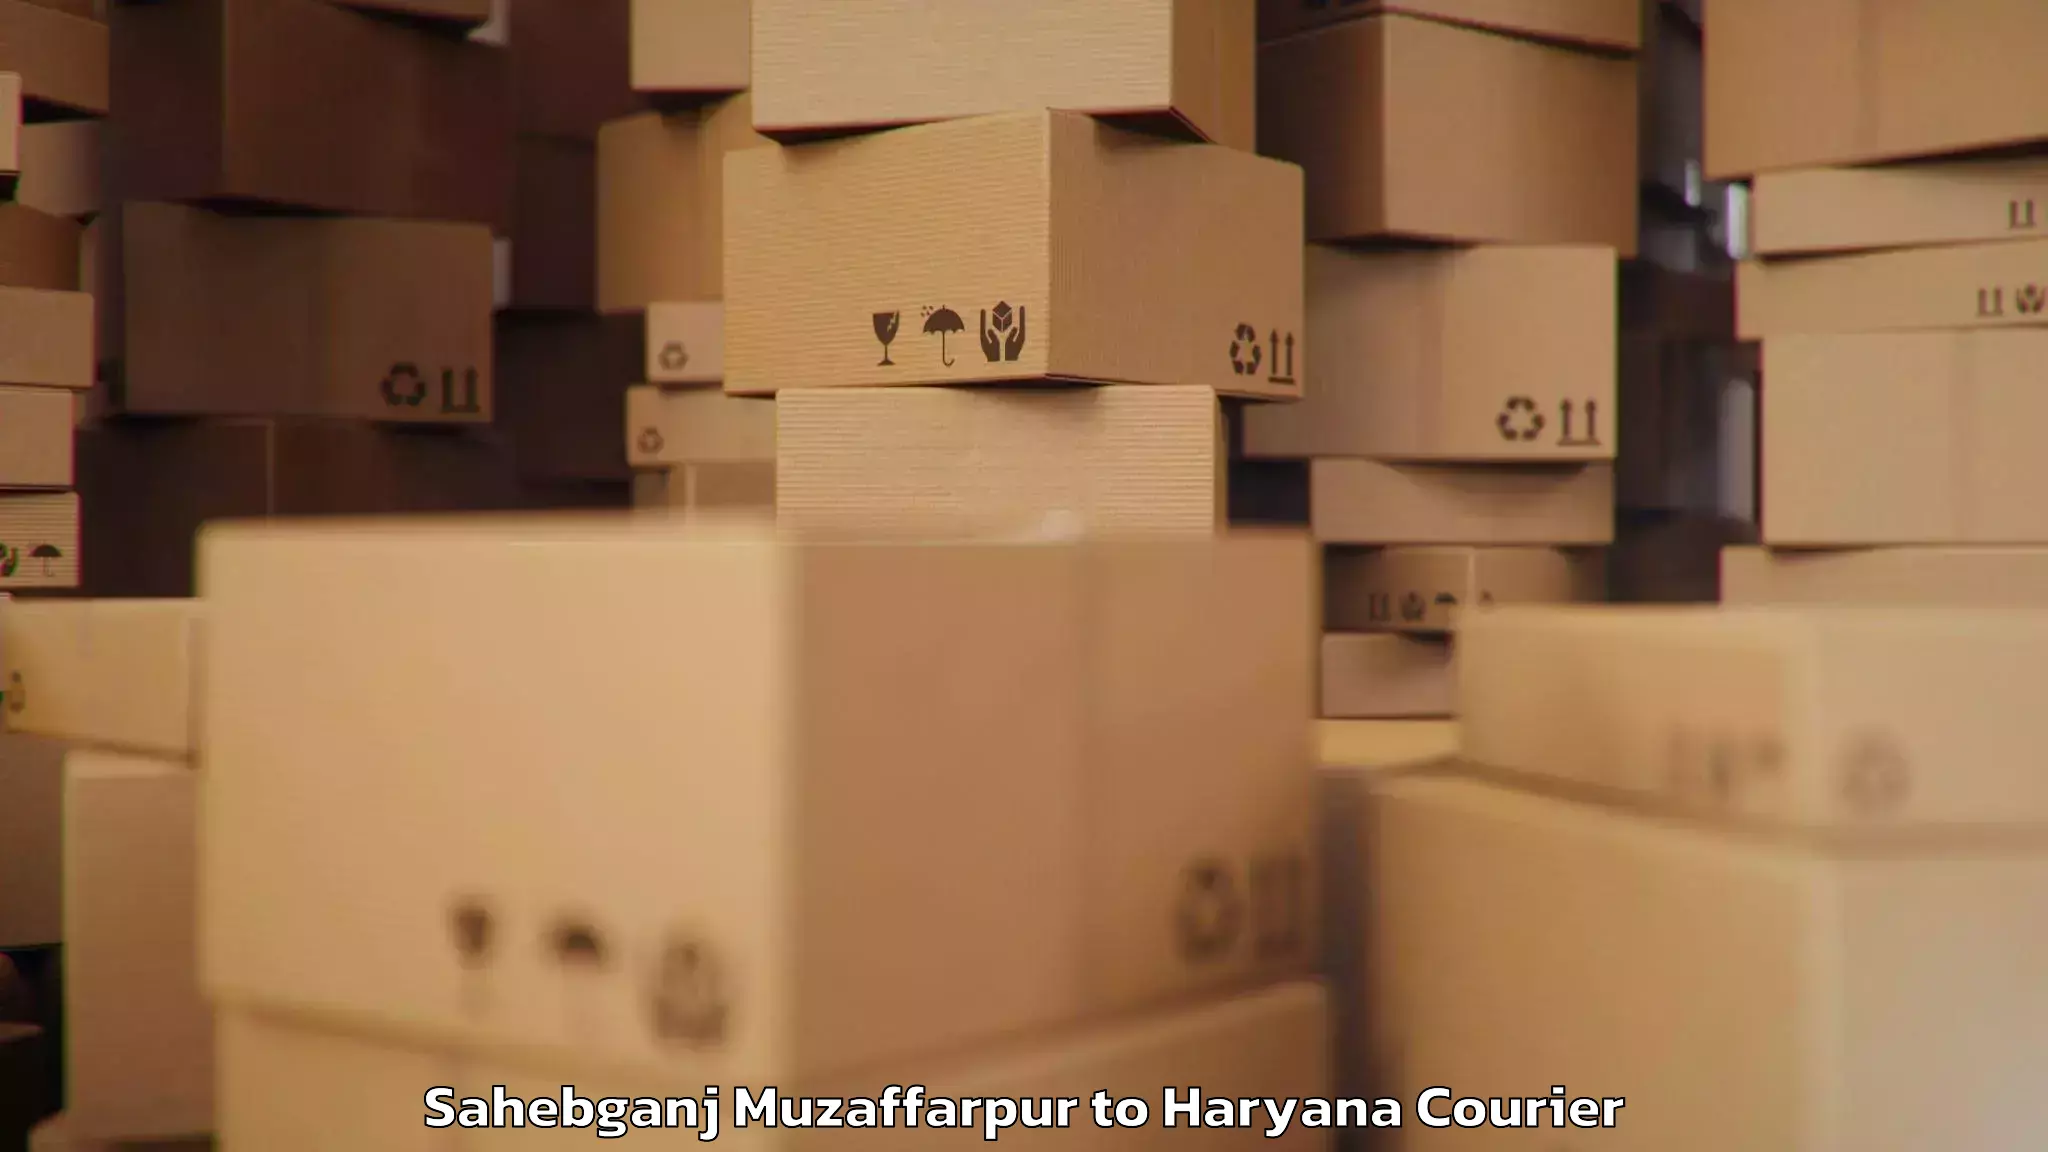 Baggage delivery support Sahebganj Muzaffarpur to Haryana